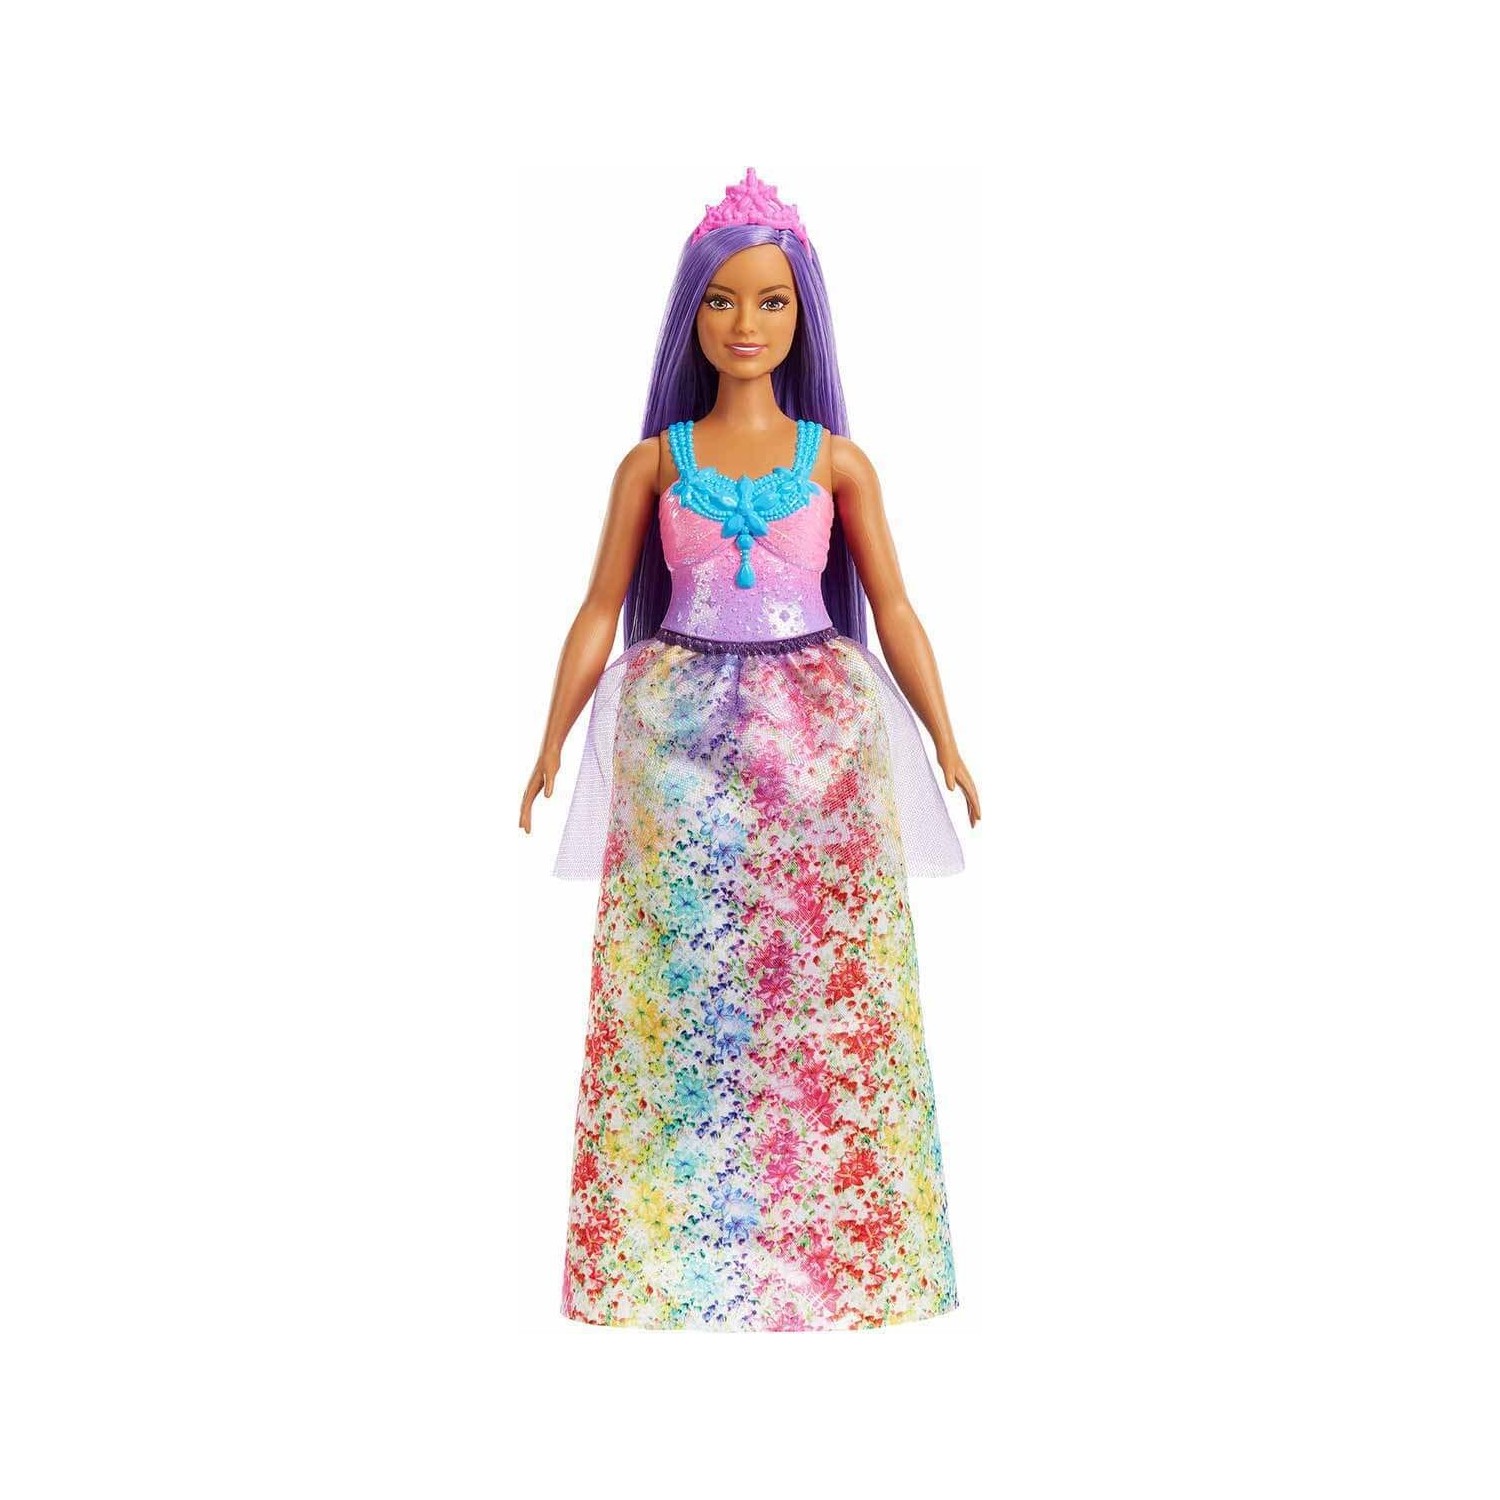 Кукла Barbie Dreamtopia Princess HGR17 кукла barbie dreamtopia princess fjc95